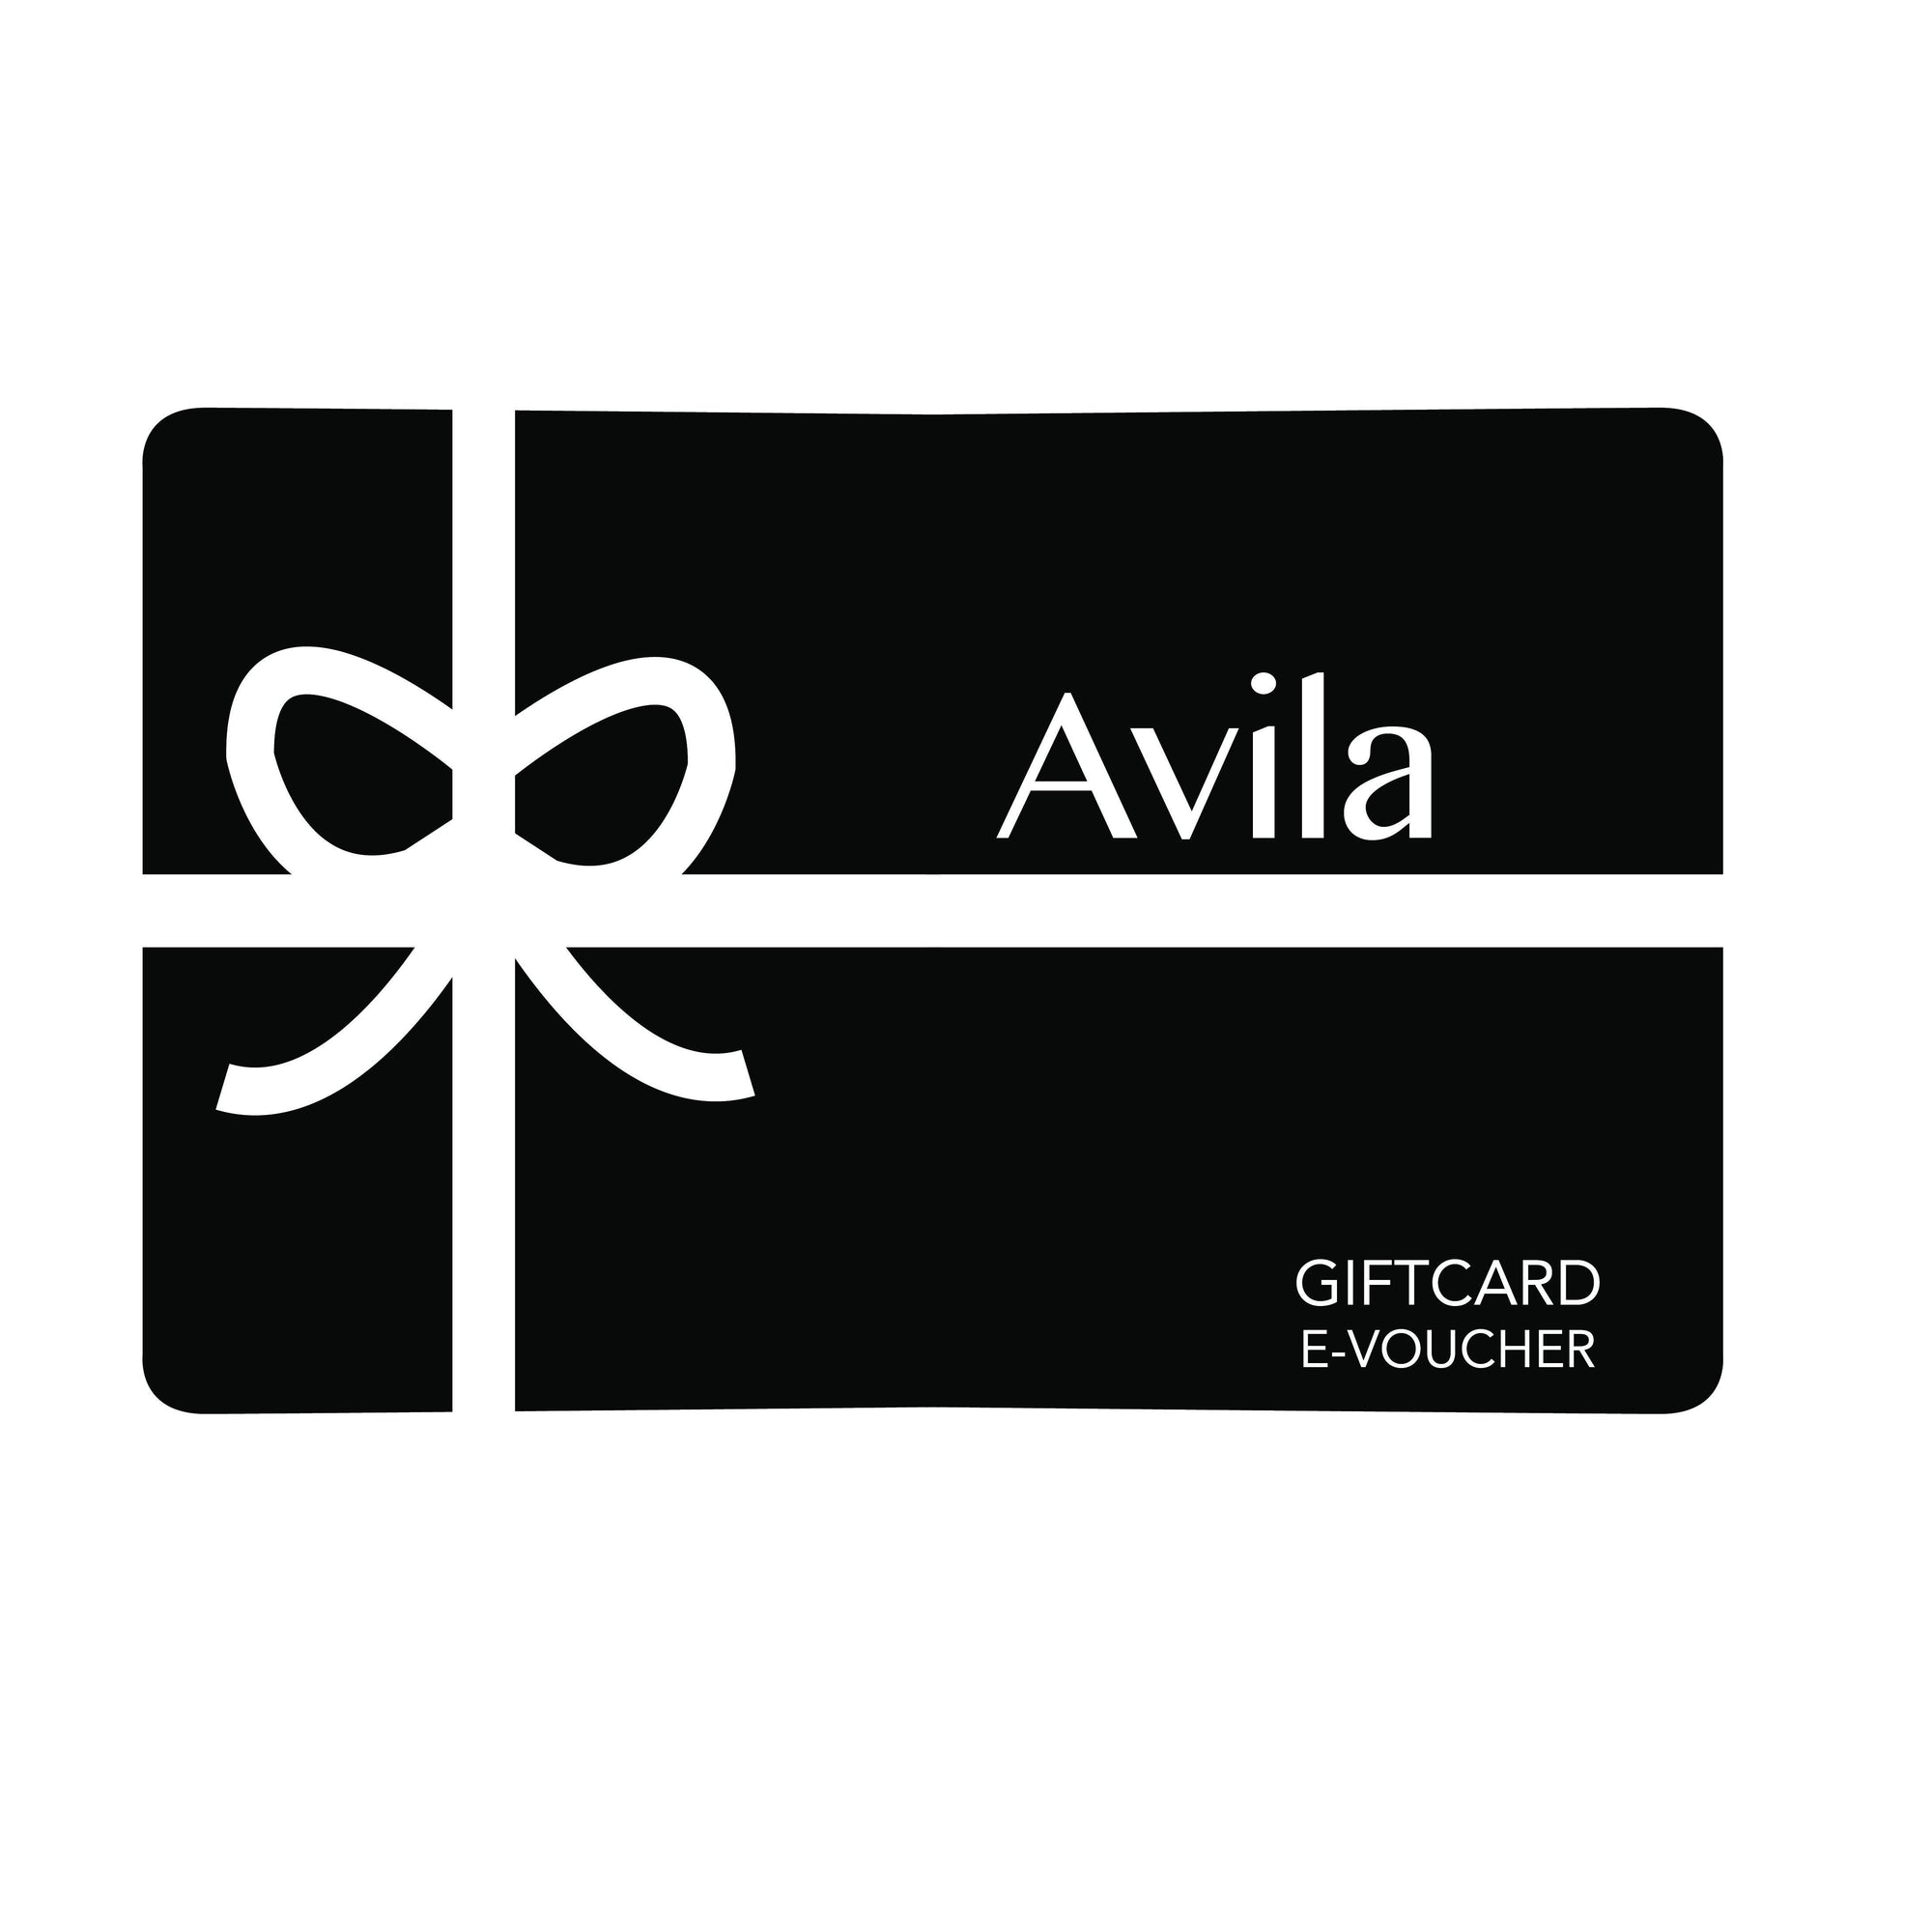 Gift card - E-voucher giftcard Avila the label 